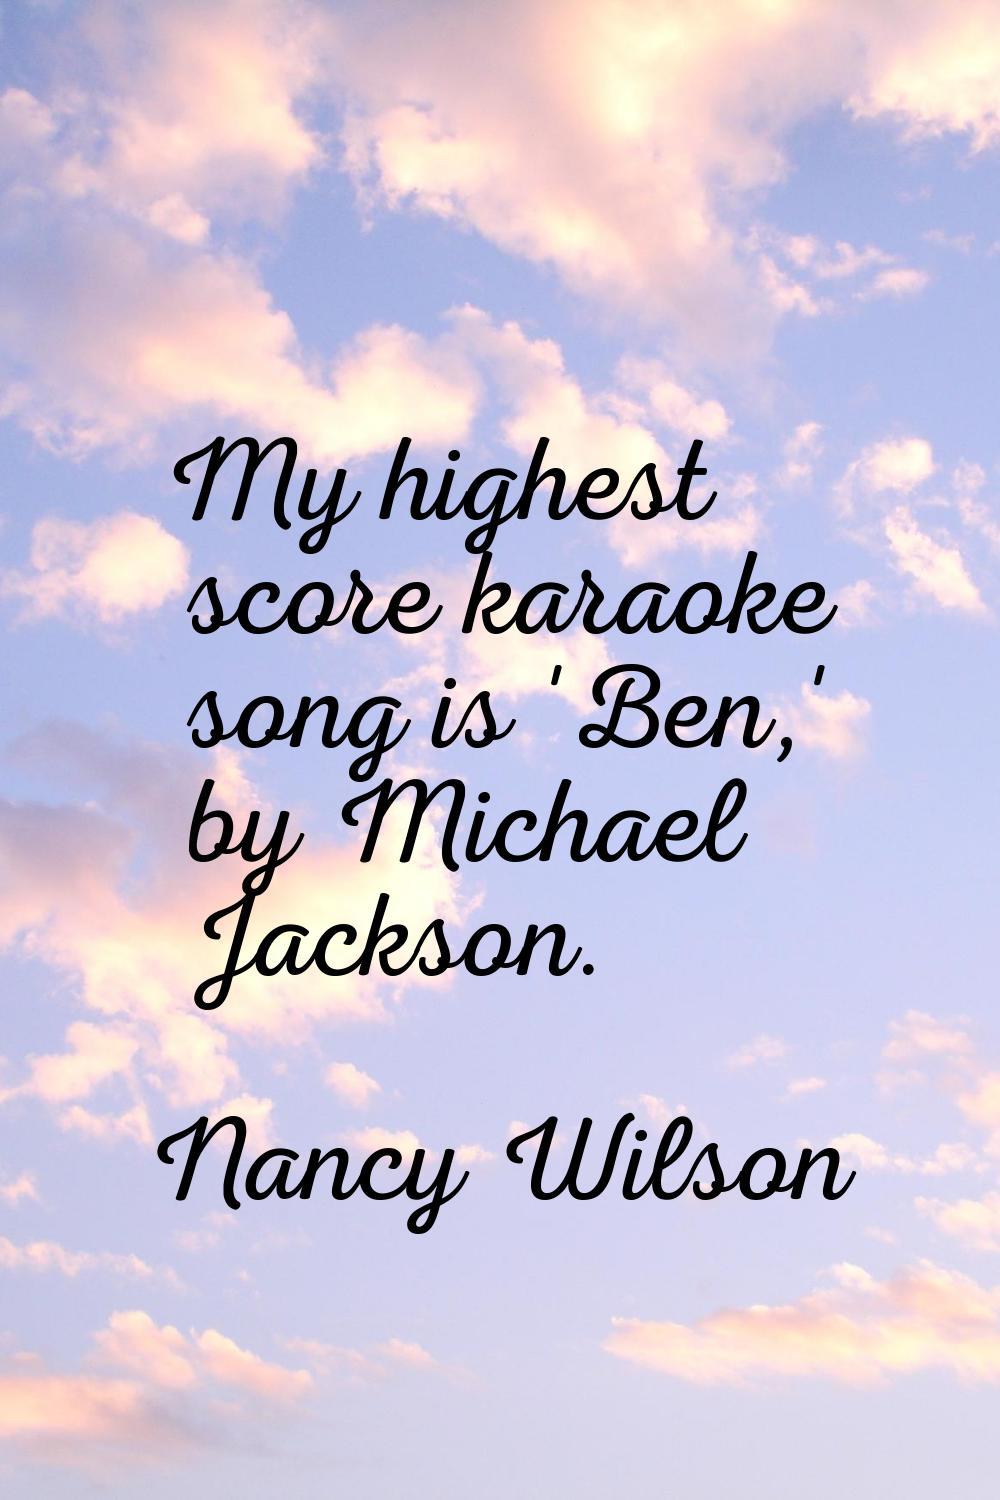 My highest score karaoke song is 'Ben,' by Michael Jackson.